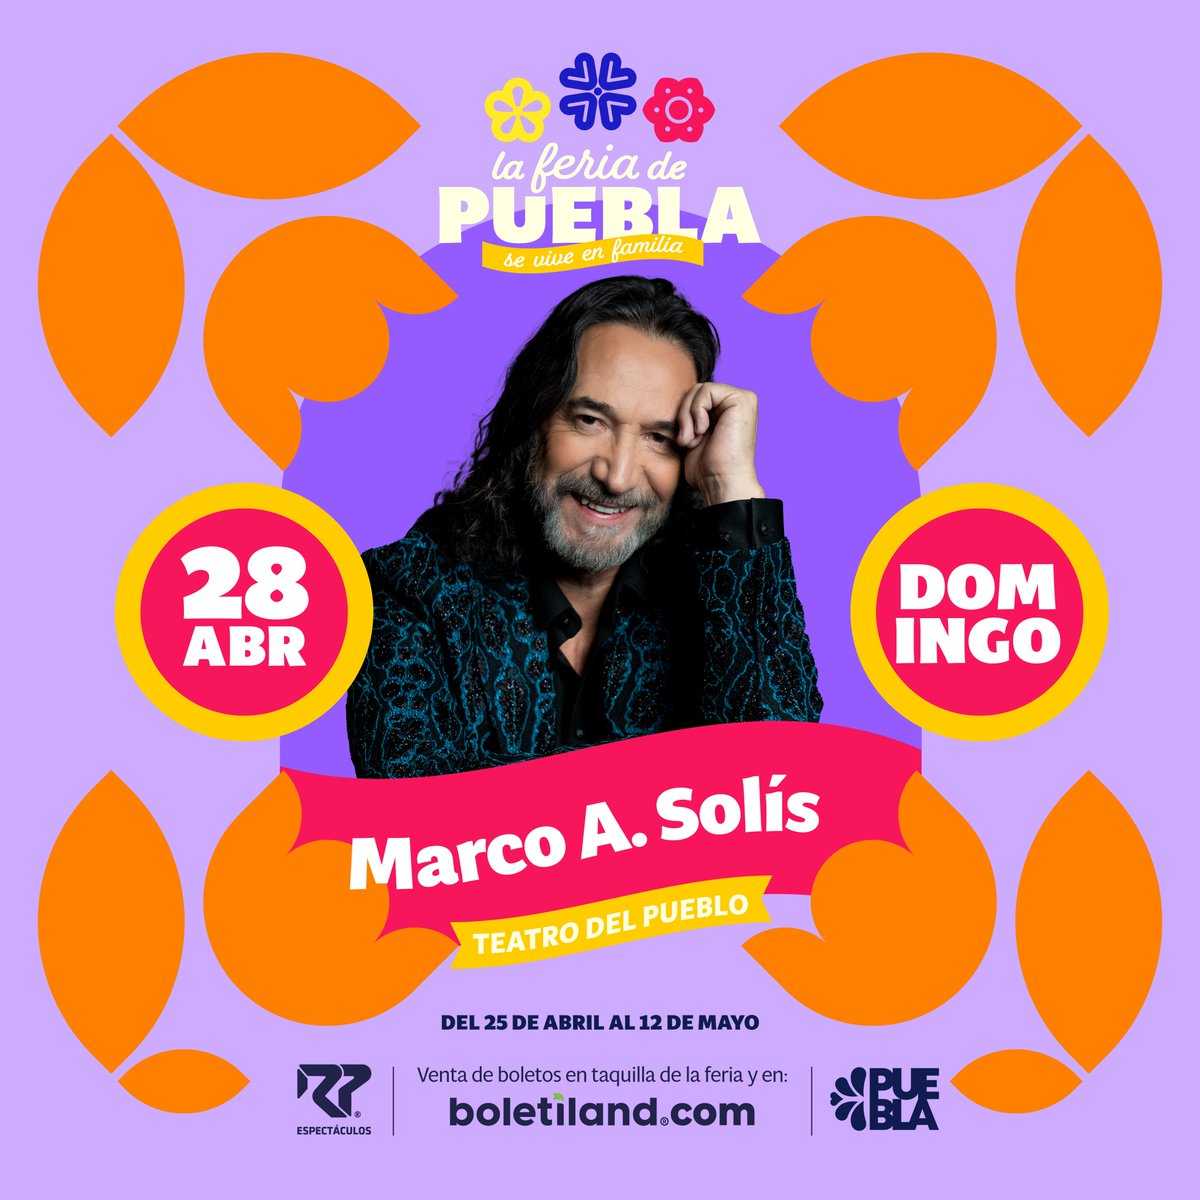 Los preparativos están listos y es momento de disfrutar del espectáculo de #MarcoAntonioSolis.

Adquiere tus boletos: Boletiland.com

Más información: facebook.com/LaFeriaDePuebla

|| ¡La Feria de Puebla, #SeViveEnFamilia!